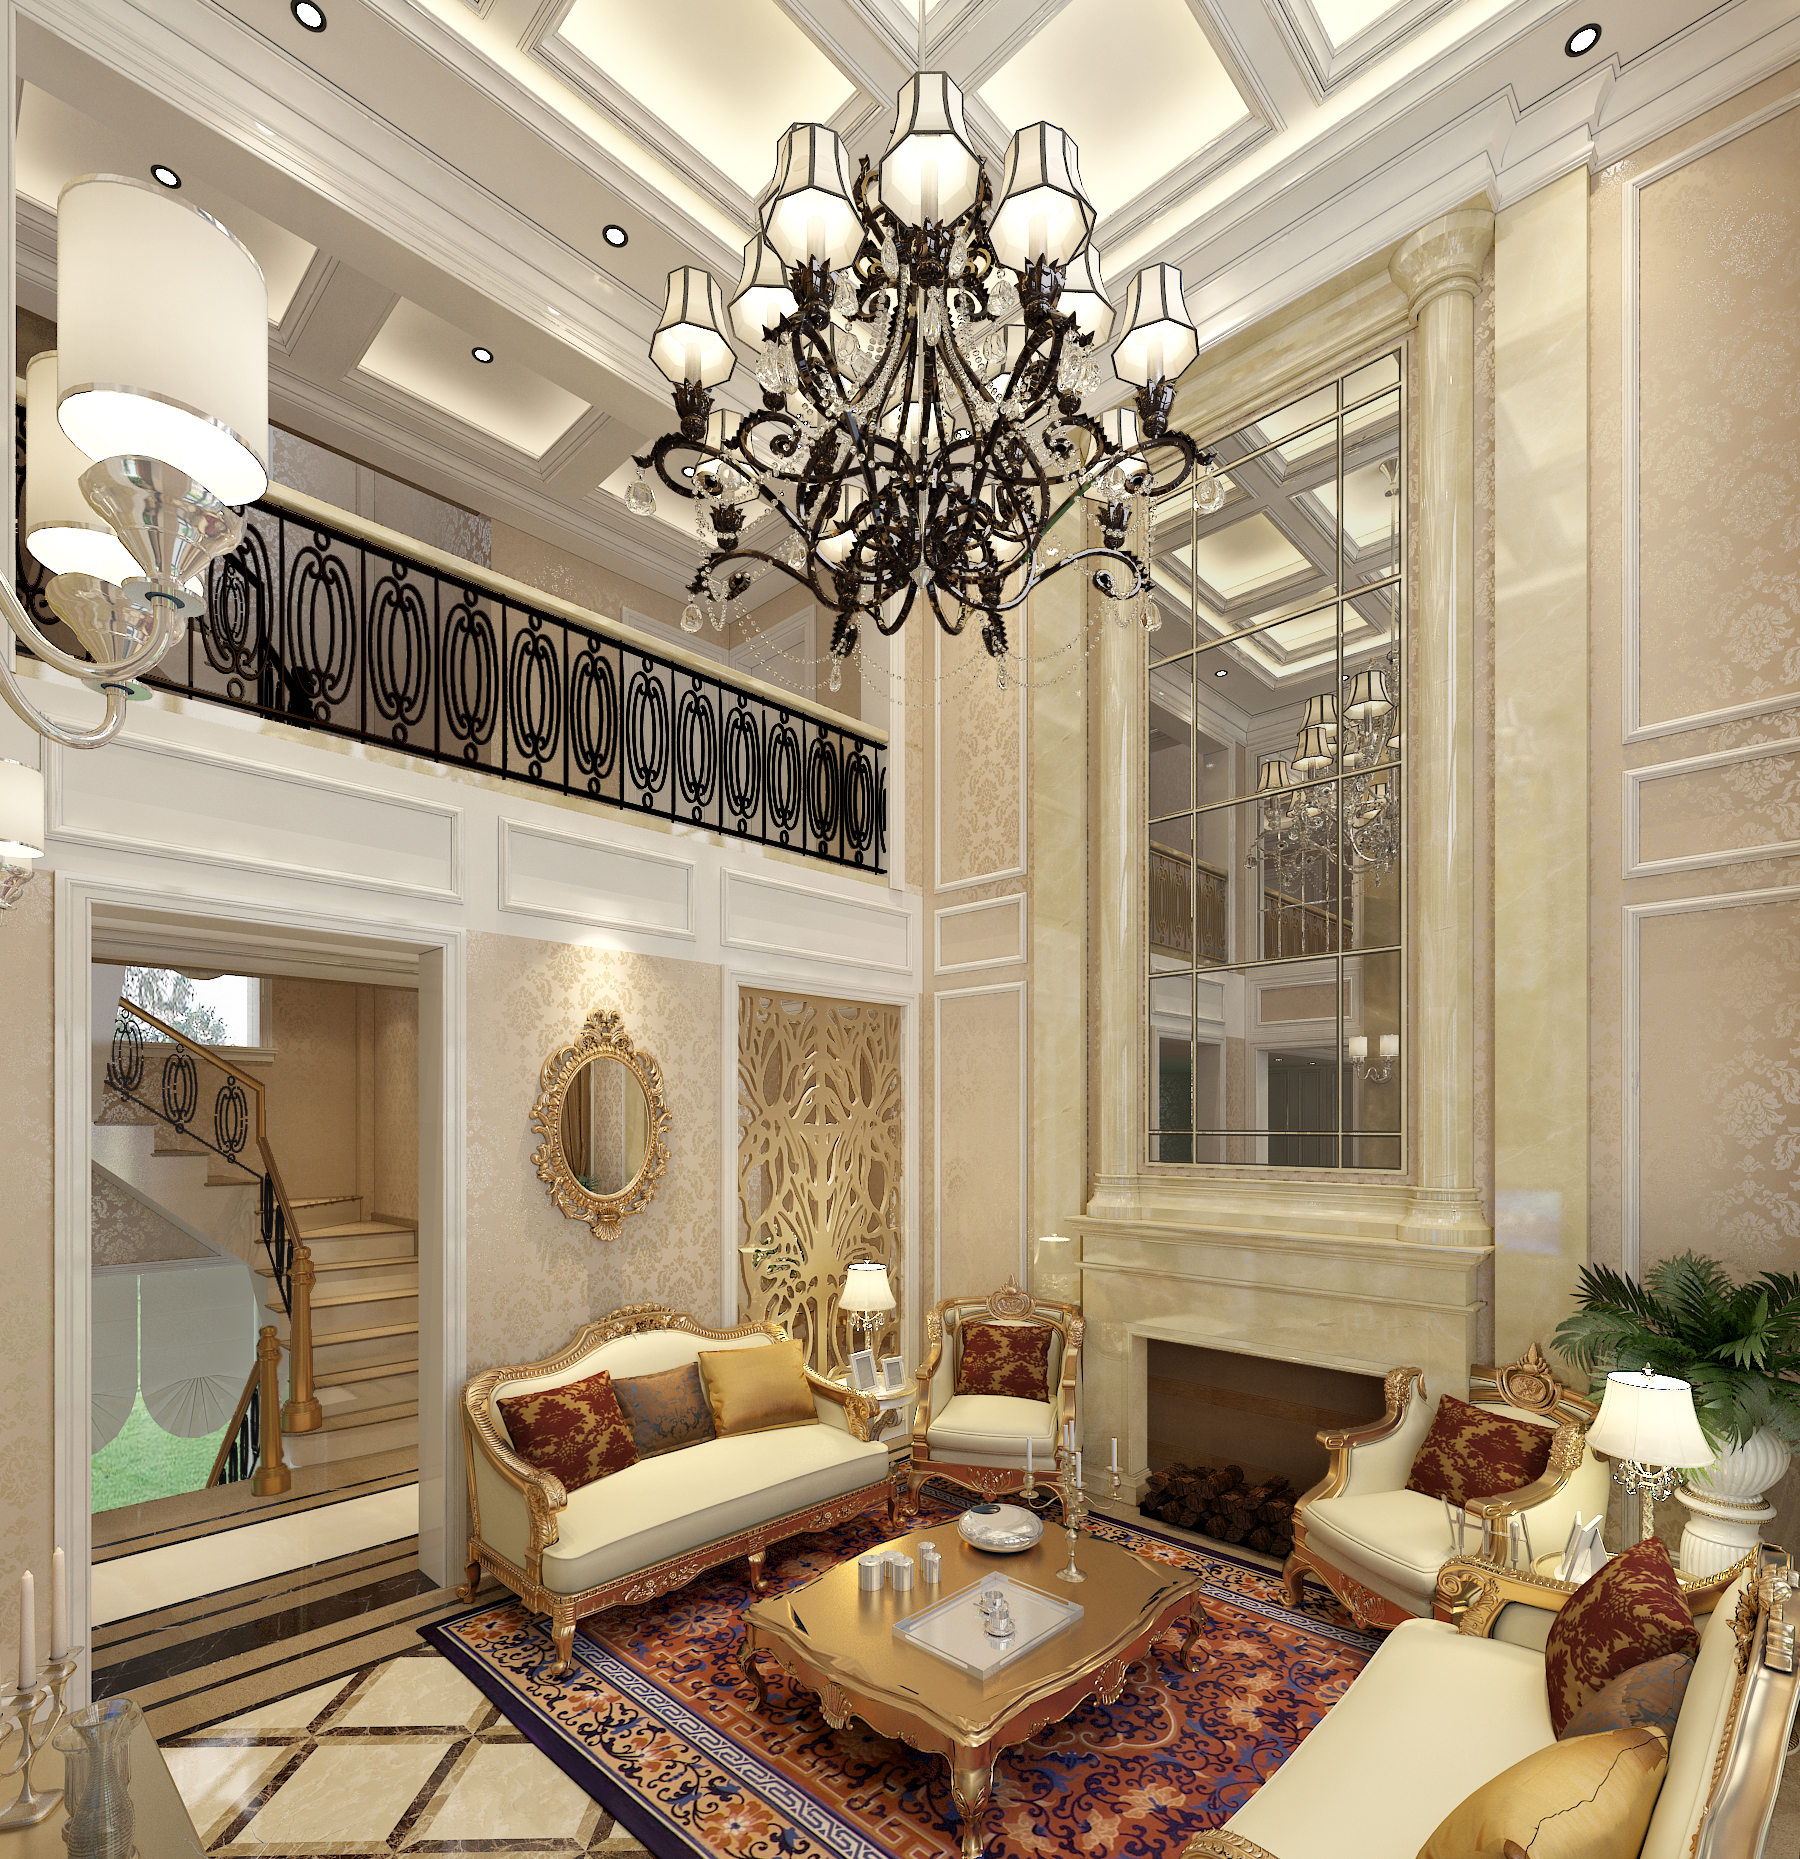 联盟新城别墅-五室两厅-奢华欧式设计